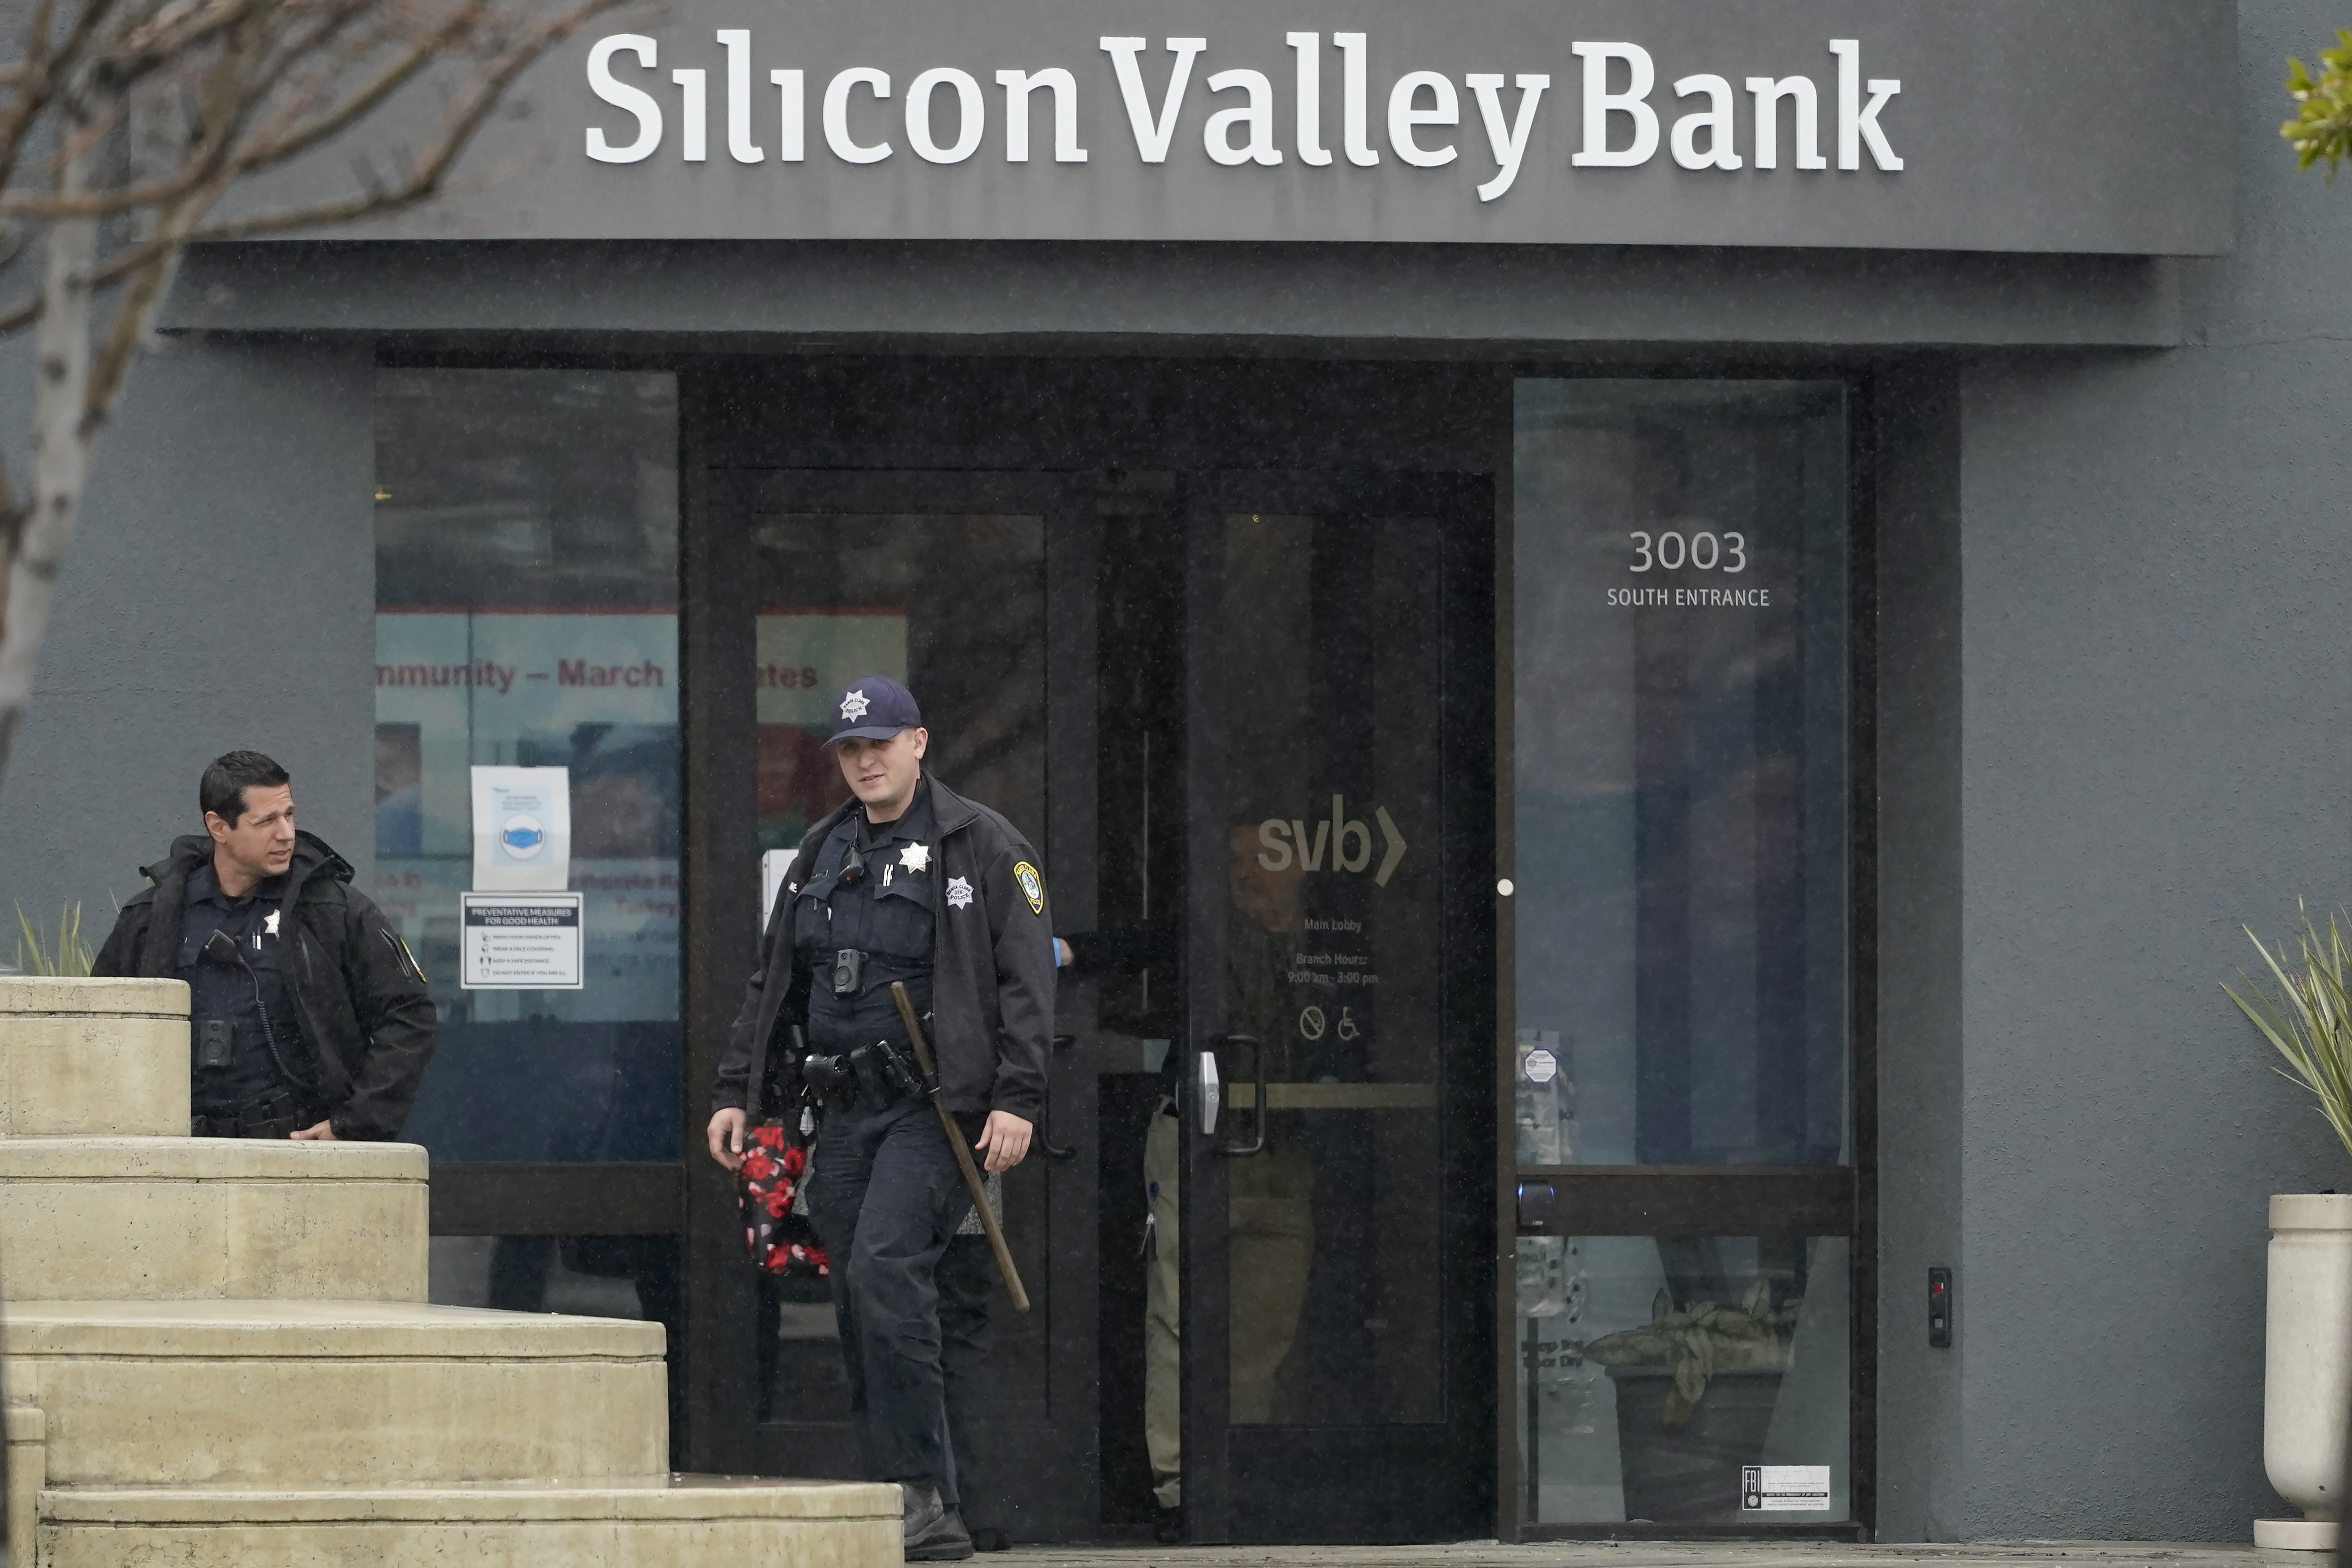 ΗΠΑ: Eργασία και μισθοί 45 ημερών στο προσωπικό της Silicon Valley Bank μετά το «λουκέτο»